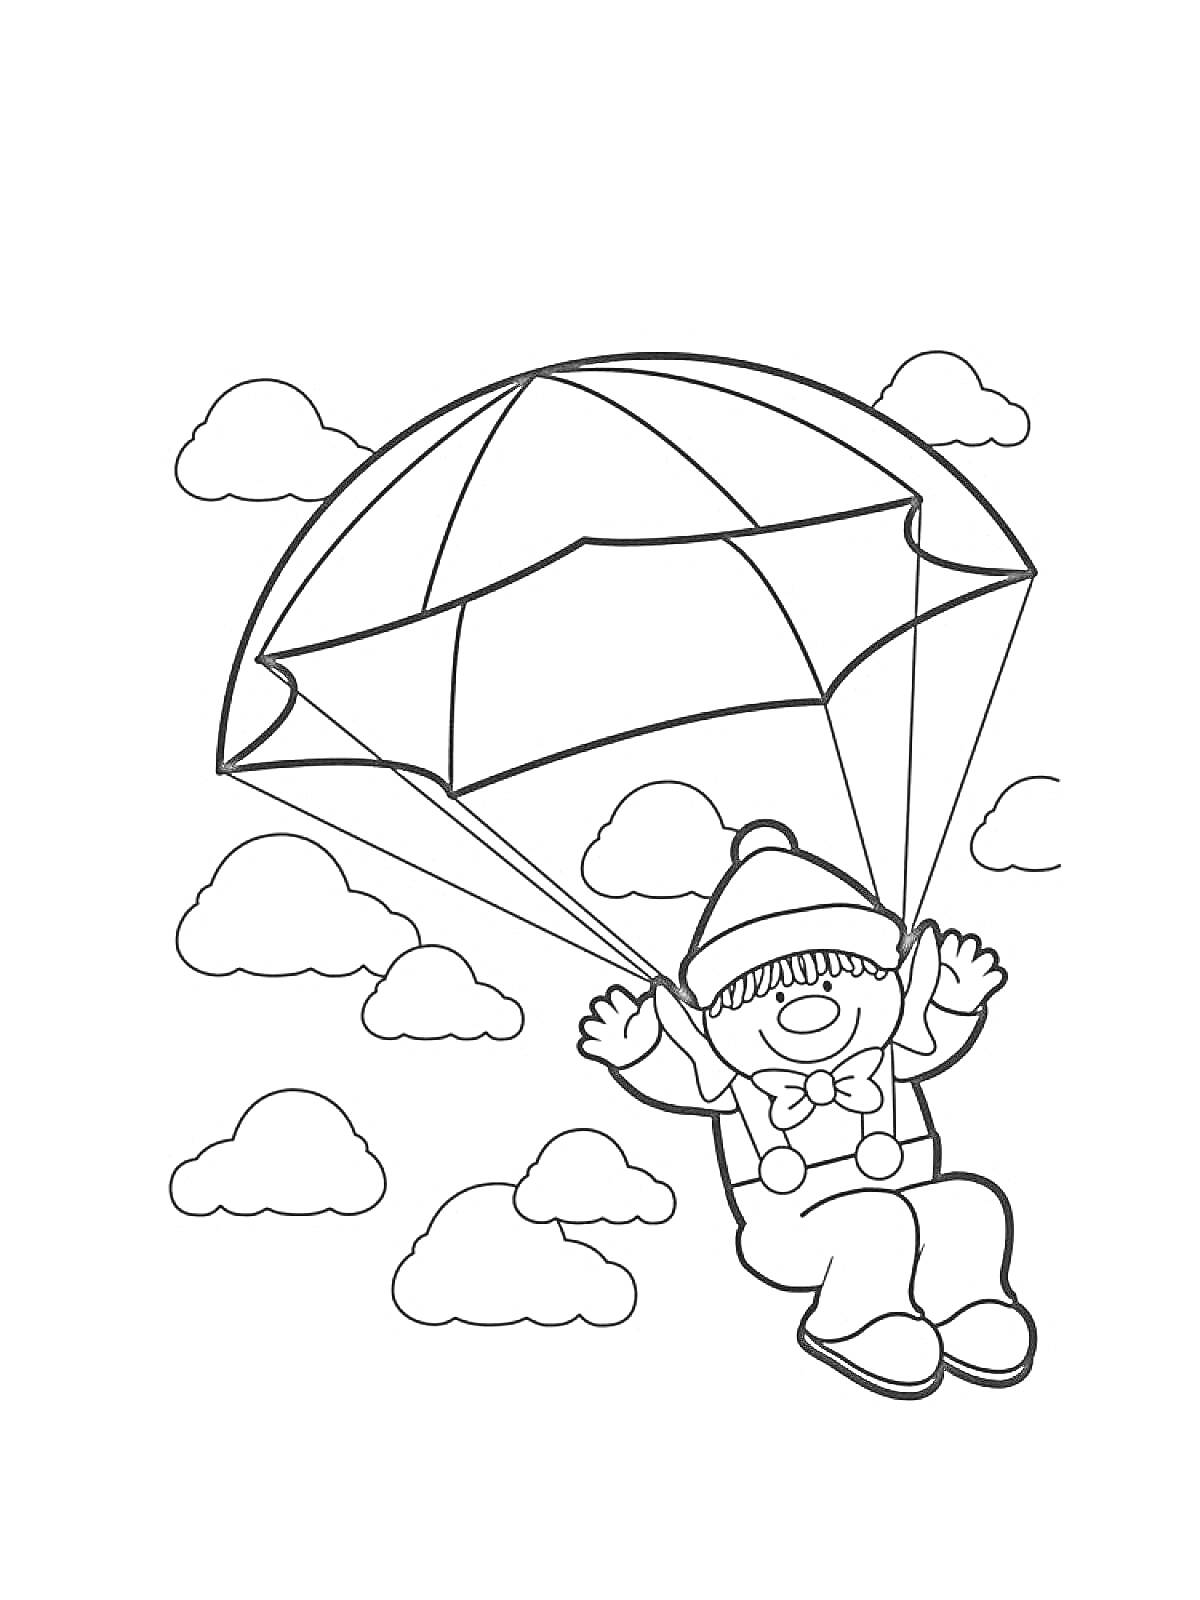 Ребёнок на парашюте с облаками на заднем плане